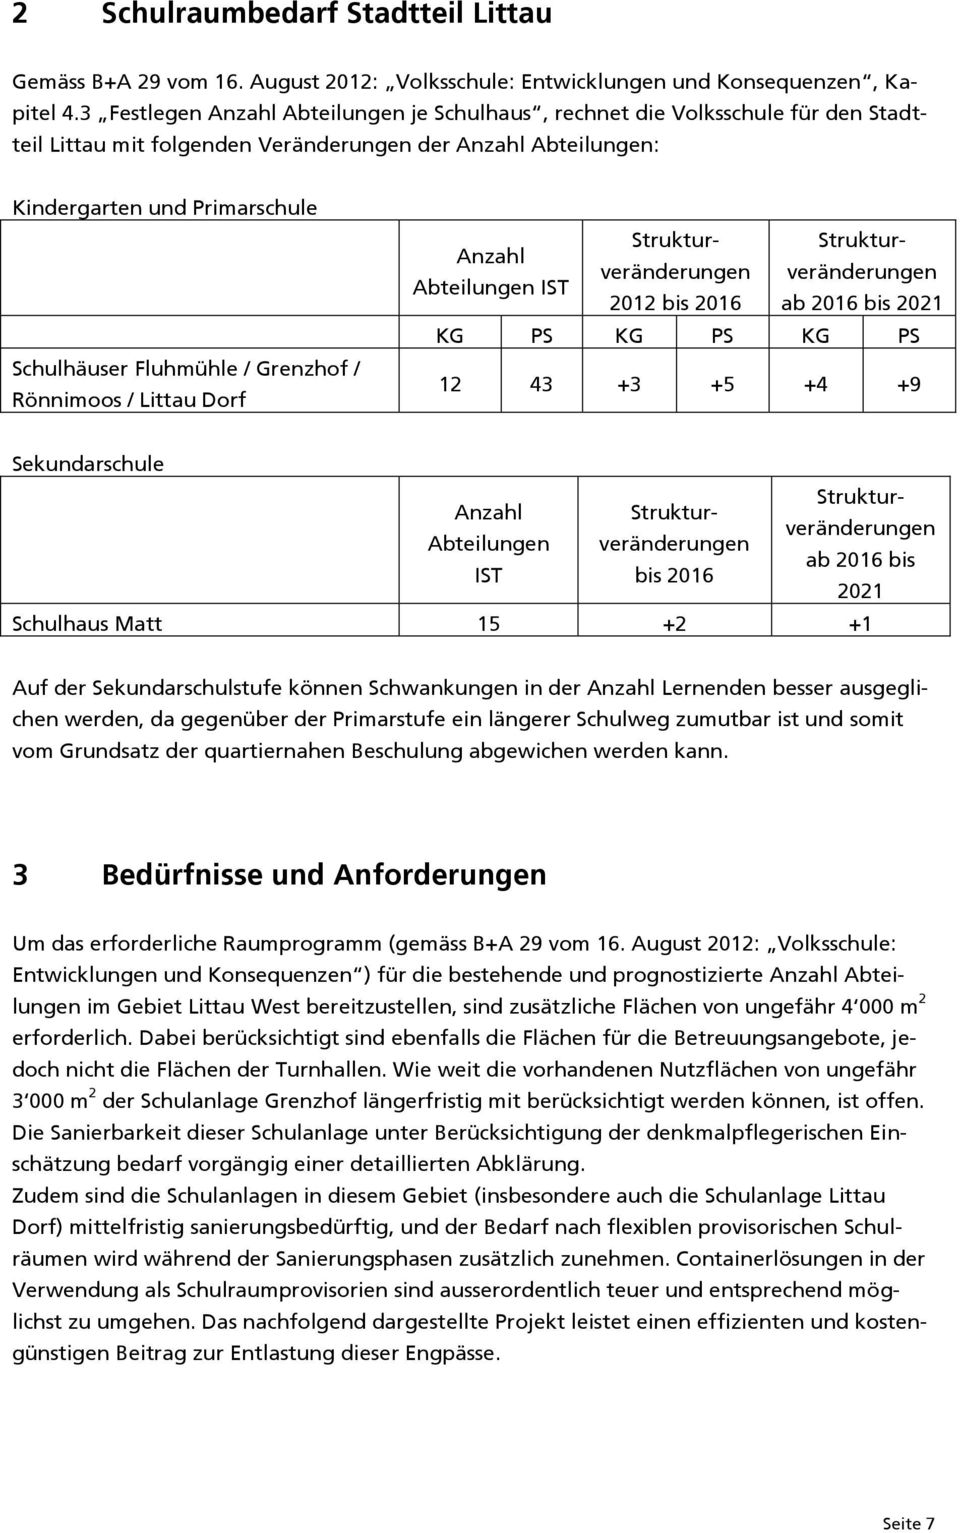 Grenzhof / Rönnimoos / Littau Dorf Strukturveränderungeveränderungen Struktur- Anzahl Abteilungen IST 2012 bis 2016 ab 2016 bis 2021 KG PS KG PS KG PS 12 43 +3 +5 +4 +9 Sekundarschule